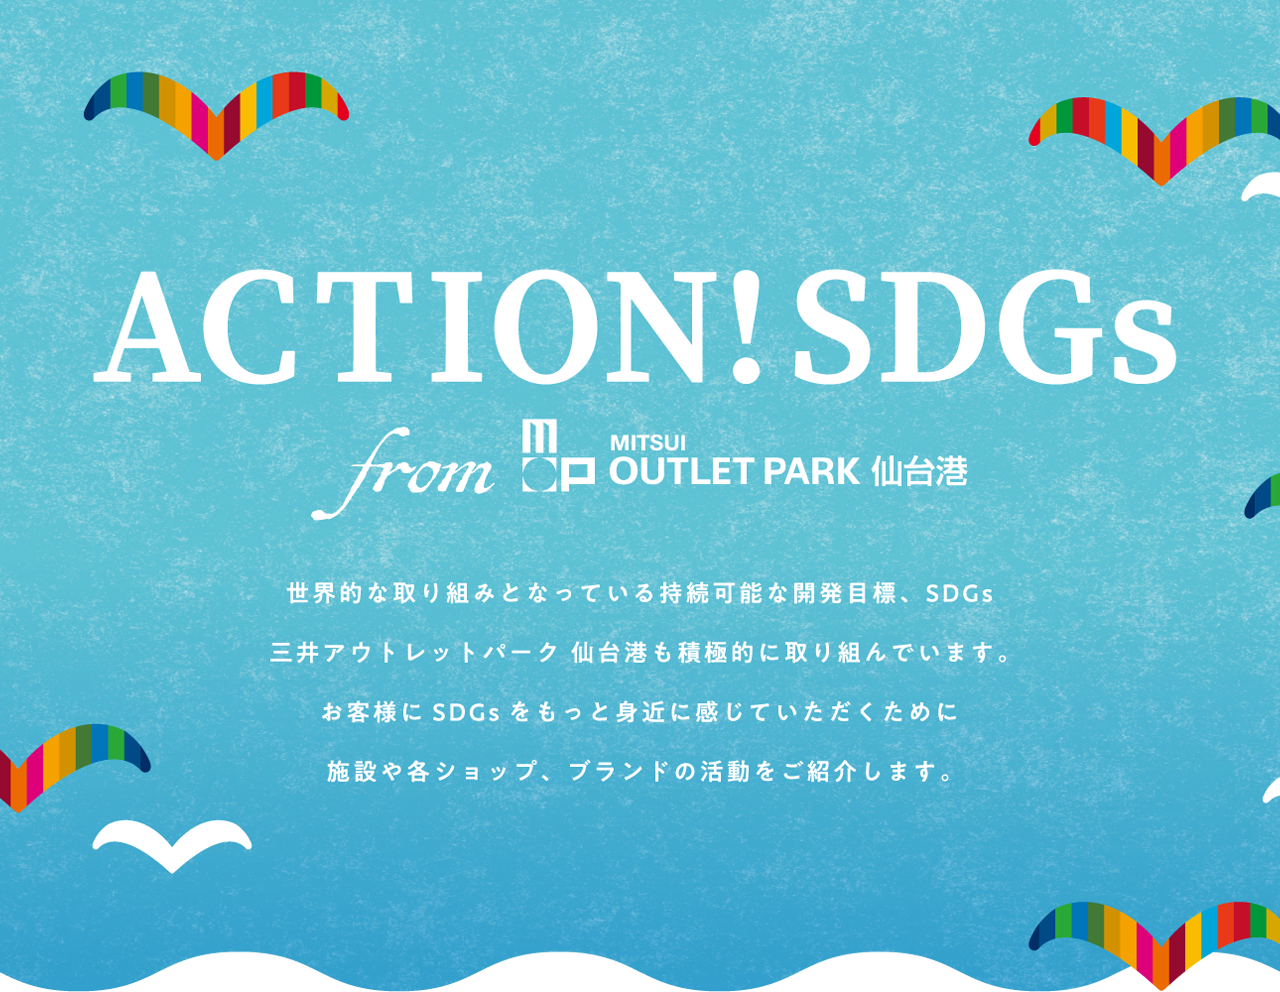 ACTION!SDGs from 三井アウトレットパーク 仙台港 世界的な取り組みとなっている持続可能な開発目標、SDGs 三井アウトレットパーク 仙台港も積極的に取り組んでいきます。お客様にSDGsをもっと身近に感じていただくために施設や各ショップ、ブランドの活動をご紹介します。